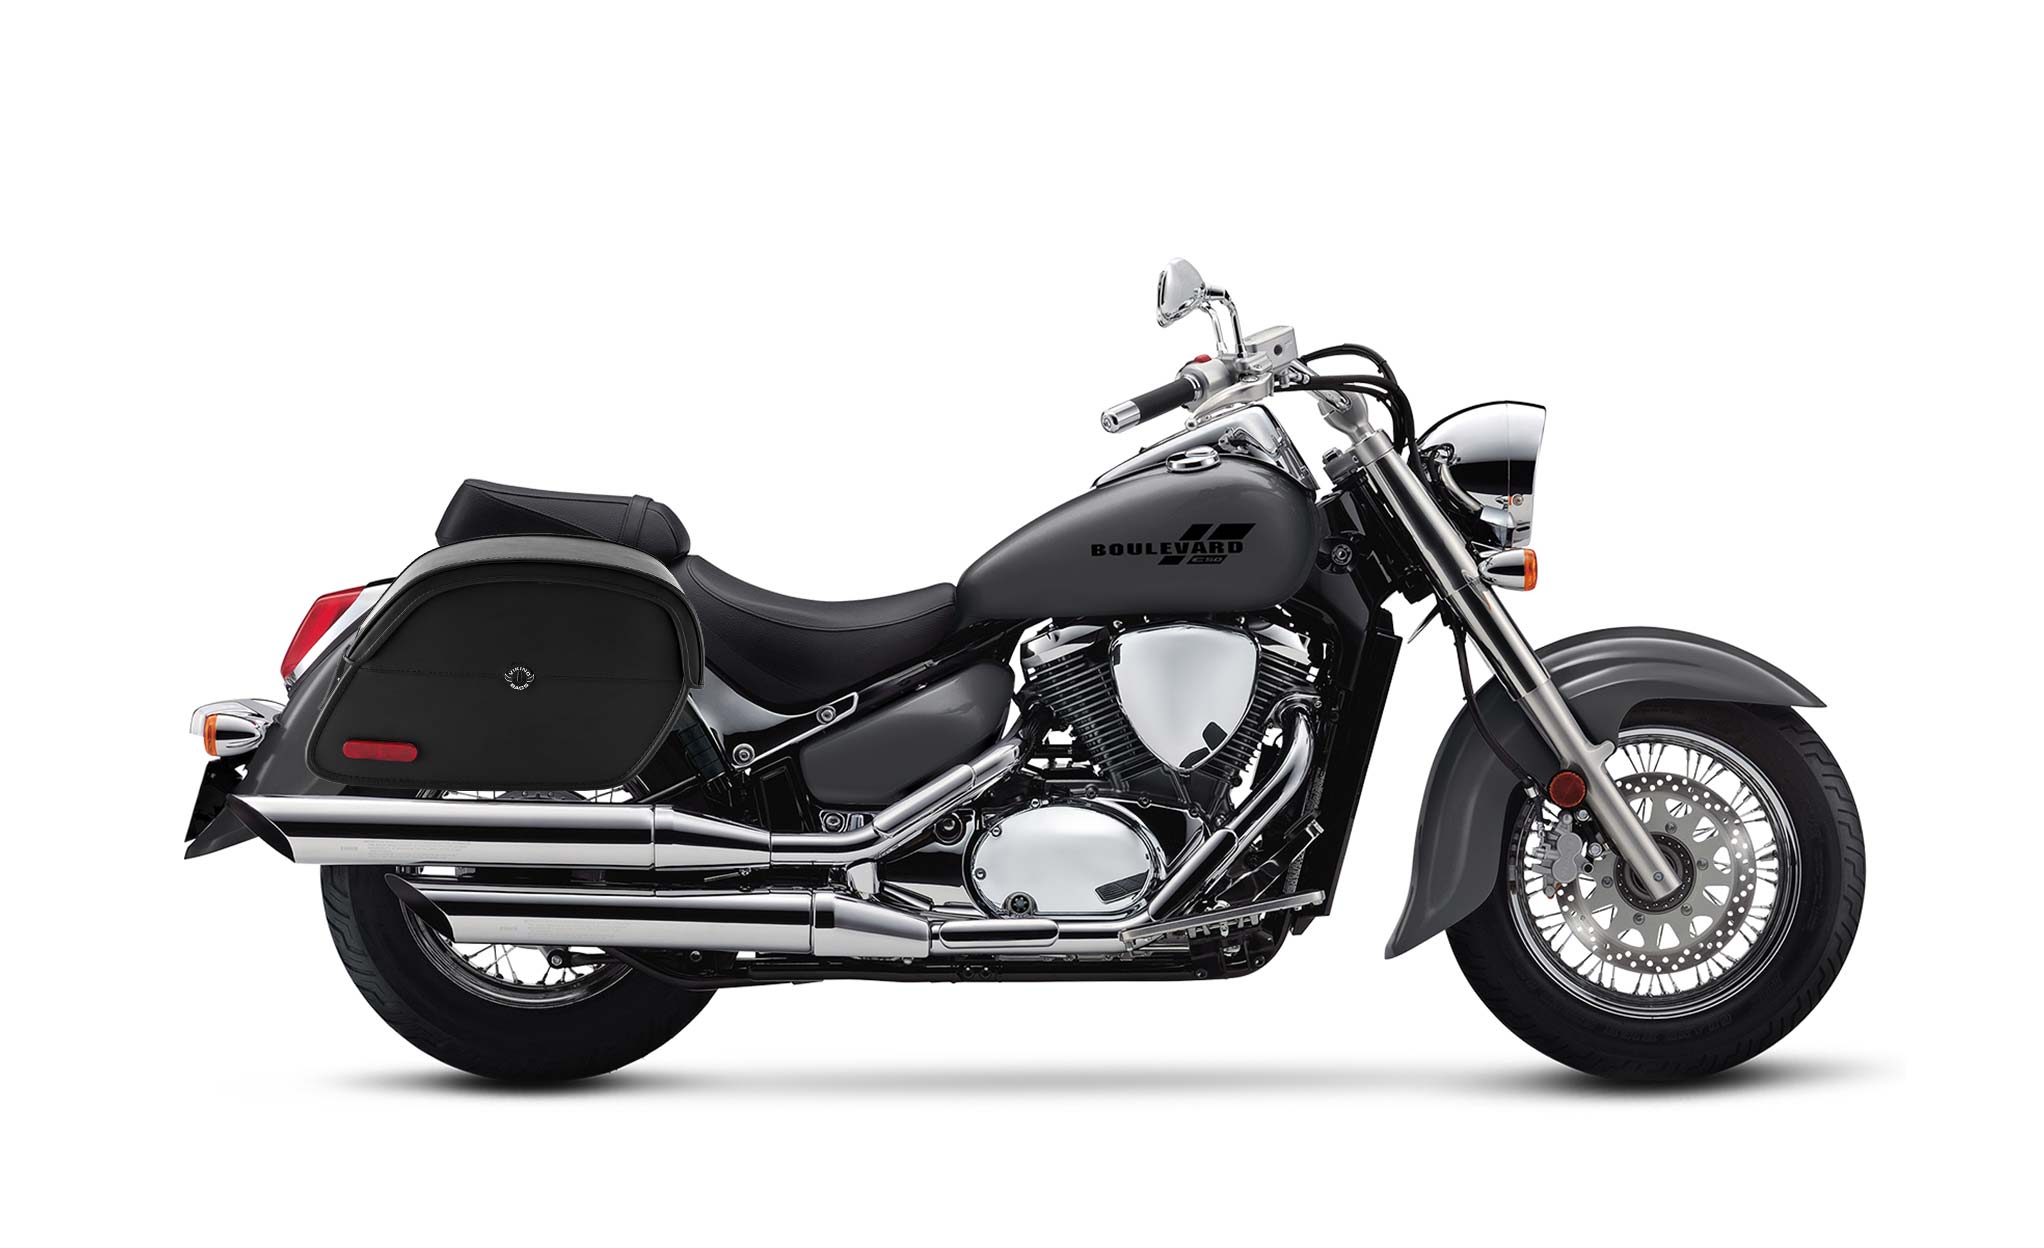 Viking California Large Suzuki Boulevard C50 Vl800 Leather Motorcycle Saddlebags on Bike Photo @expand